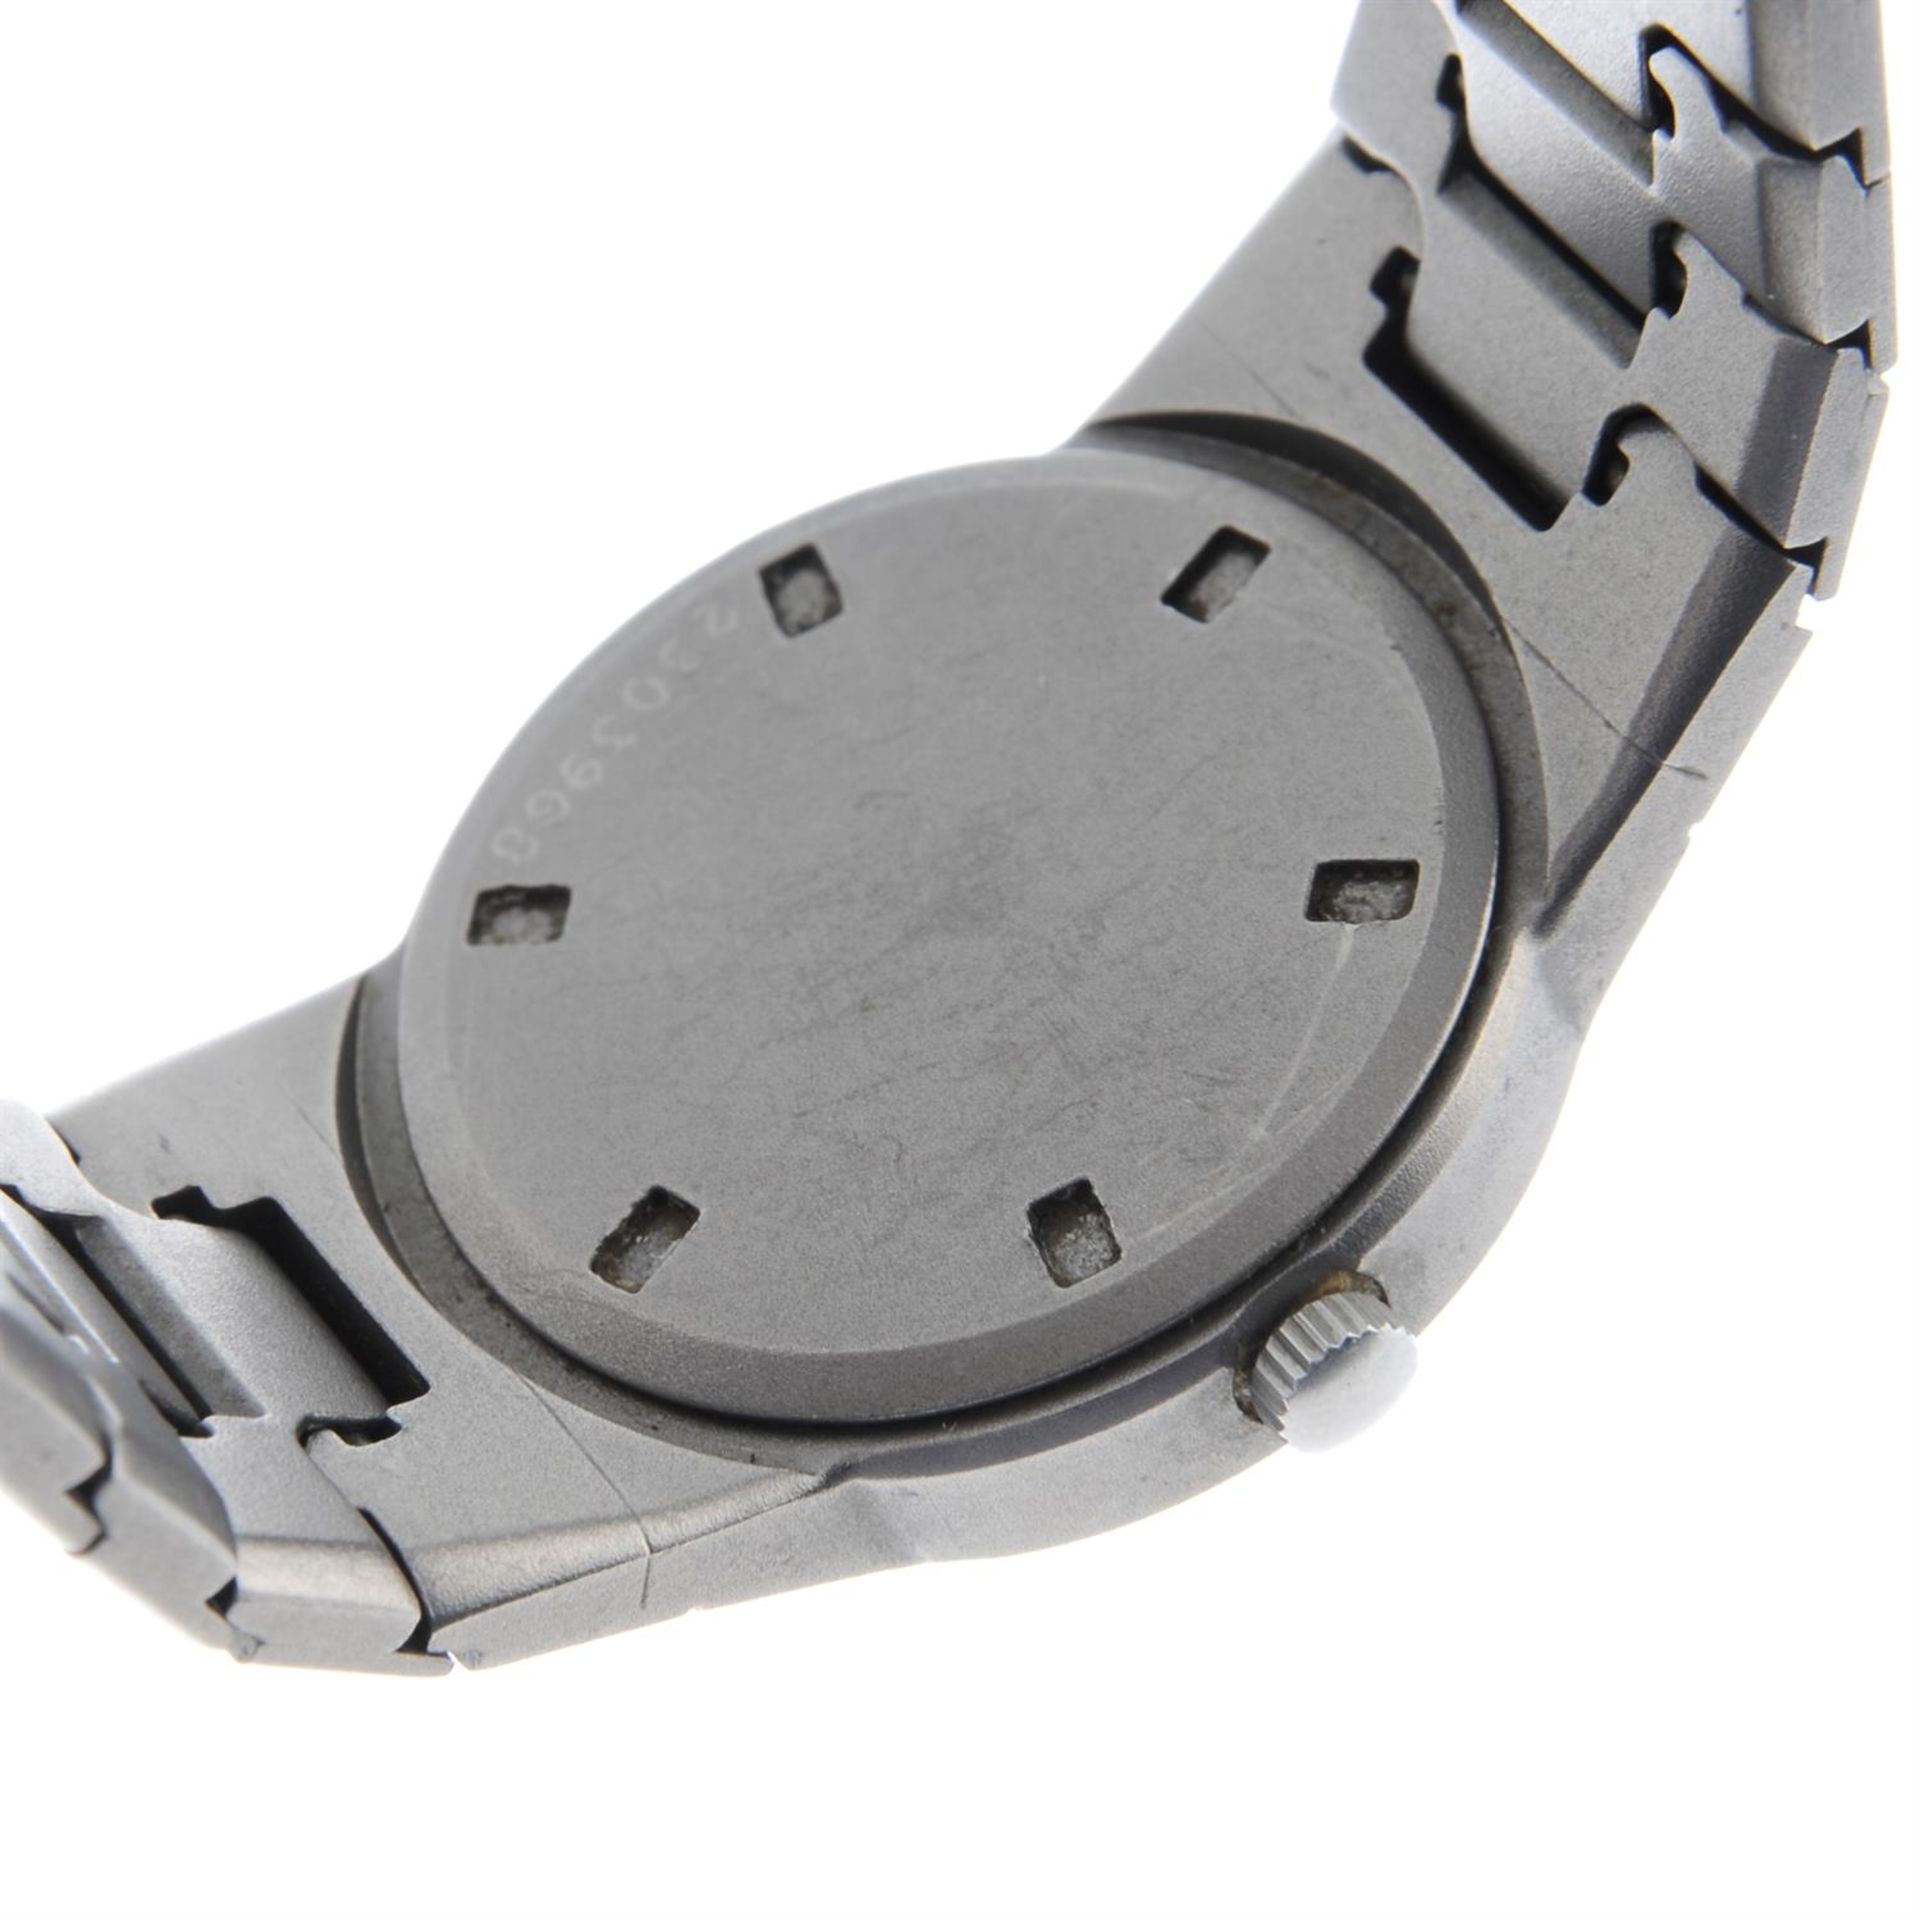 IWC - a Porsche Design bracelet watch, 26mm. - Image 4 of 4